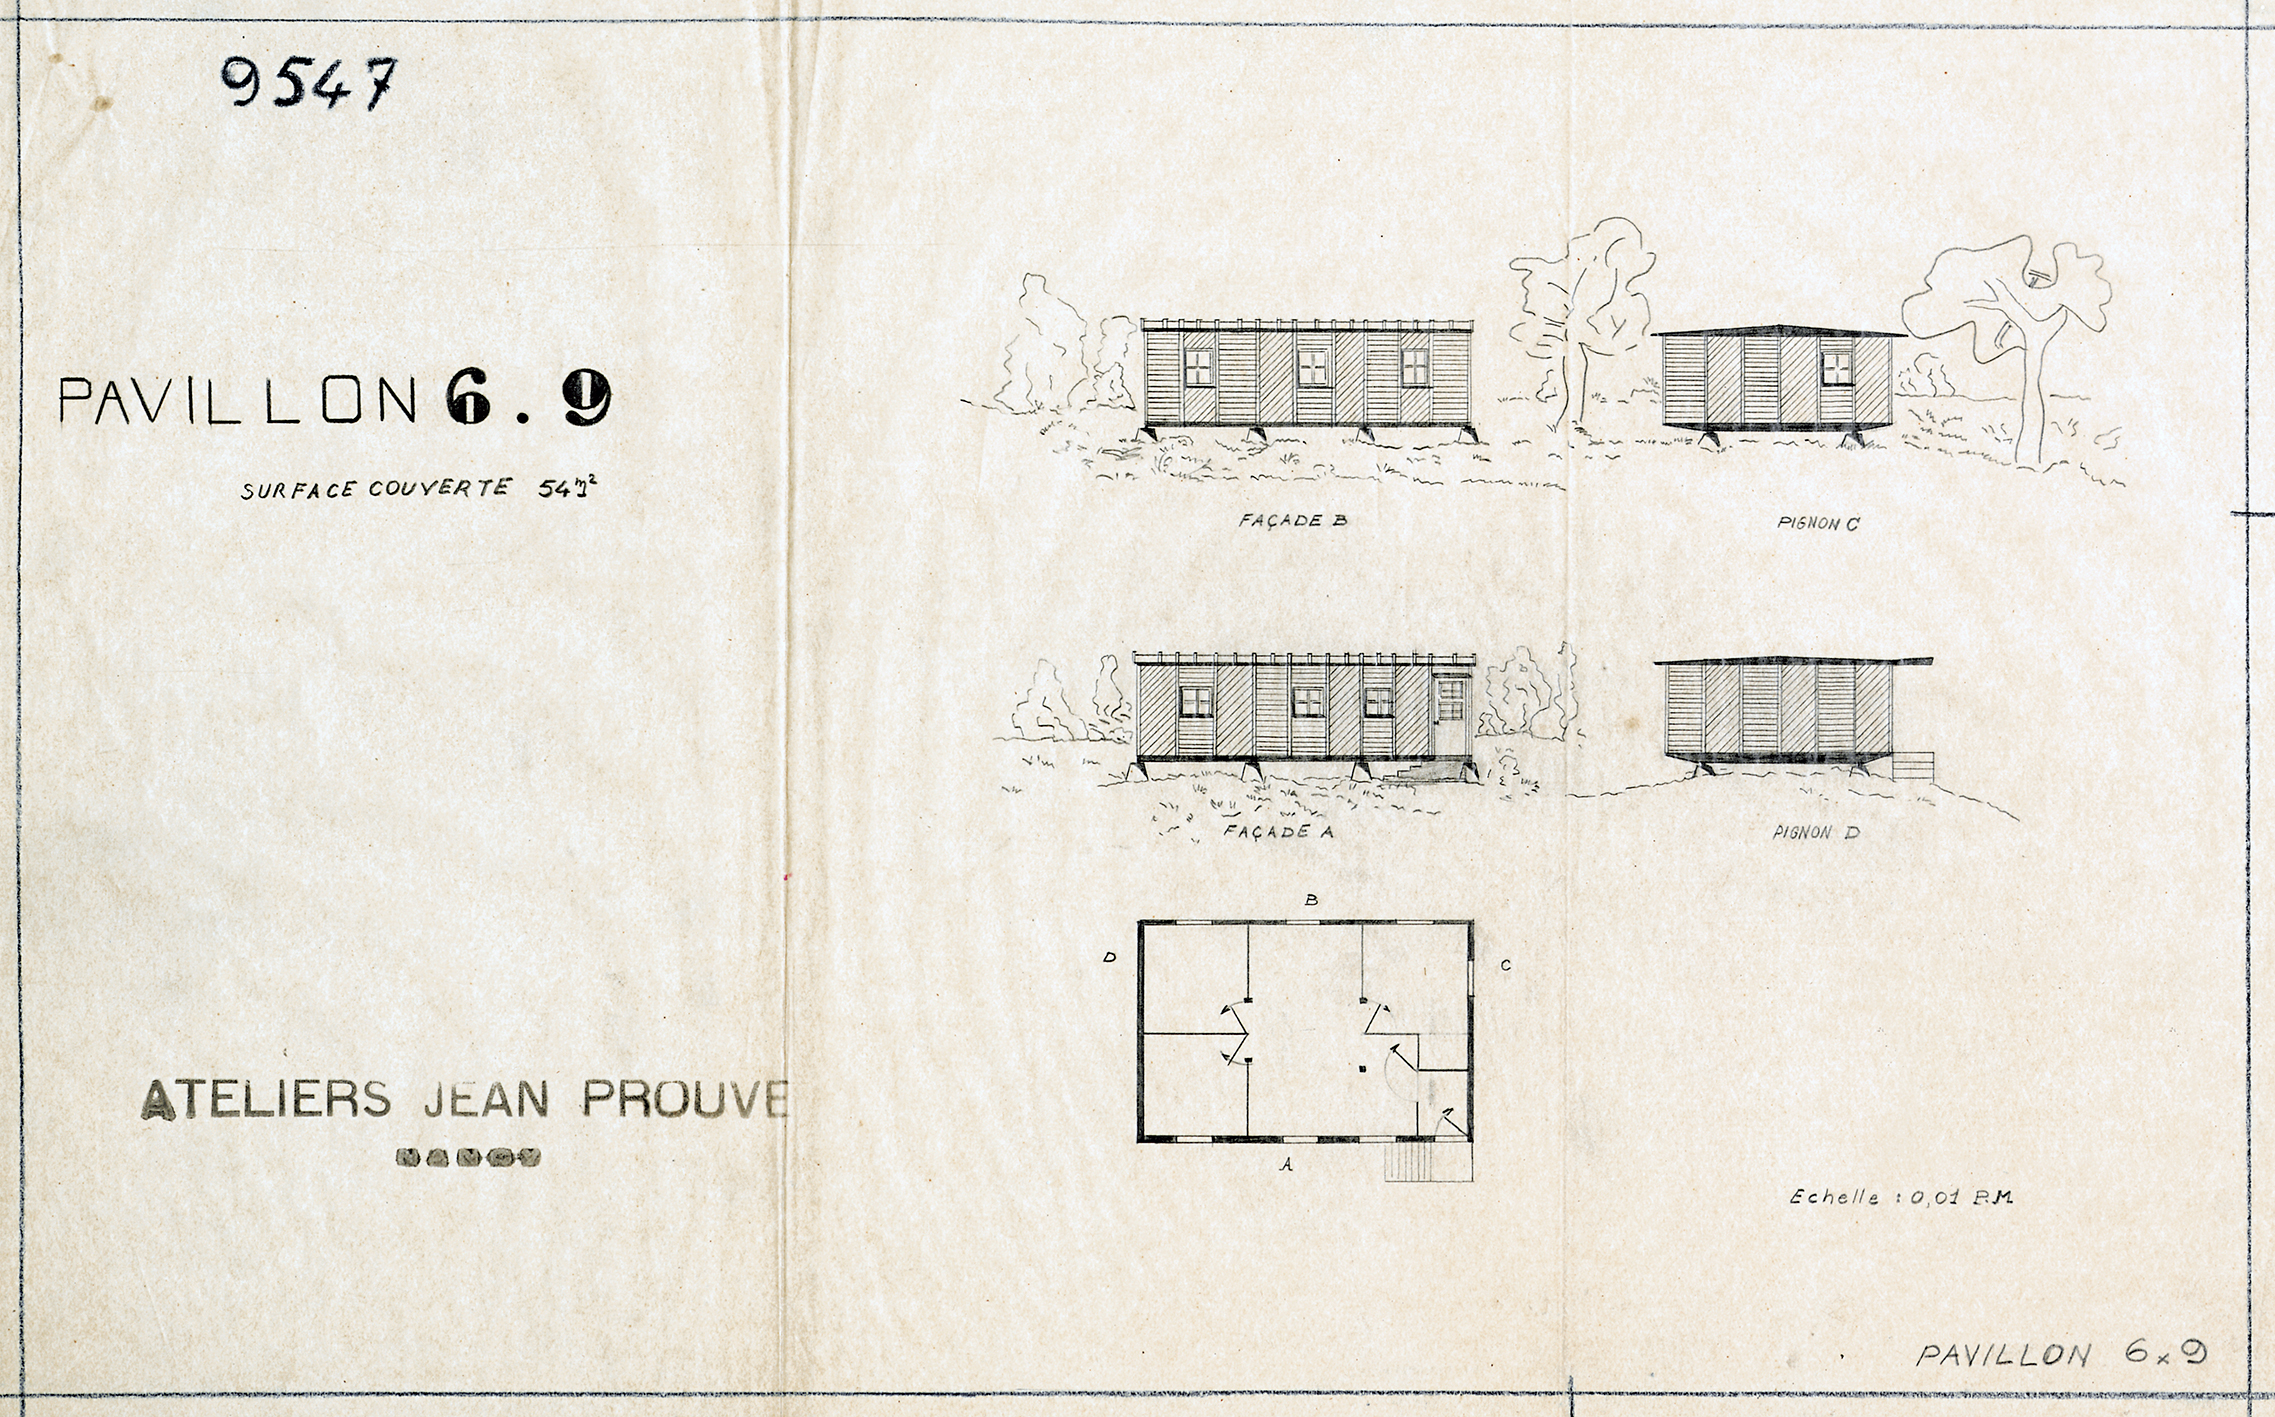 Ateliers Jean Prouvé. “6x9 Pavilion, surface area 54 m2”, drawing no. 9547, 12 January 1945.